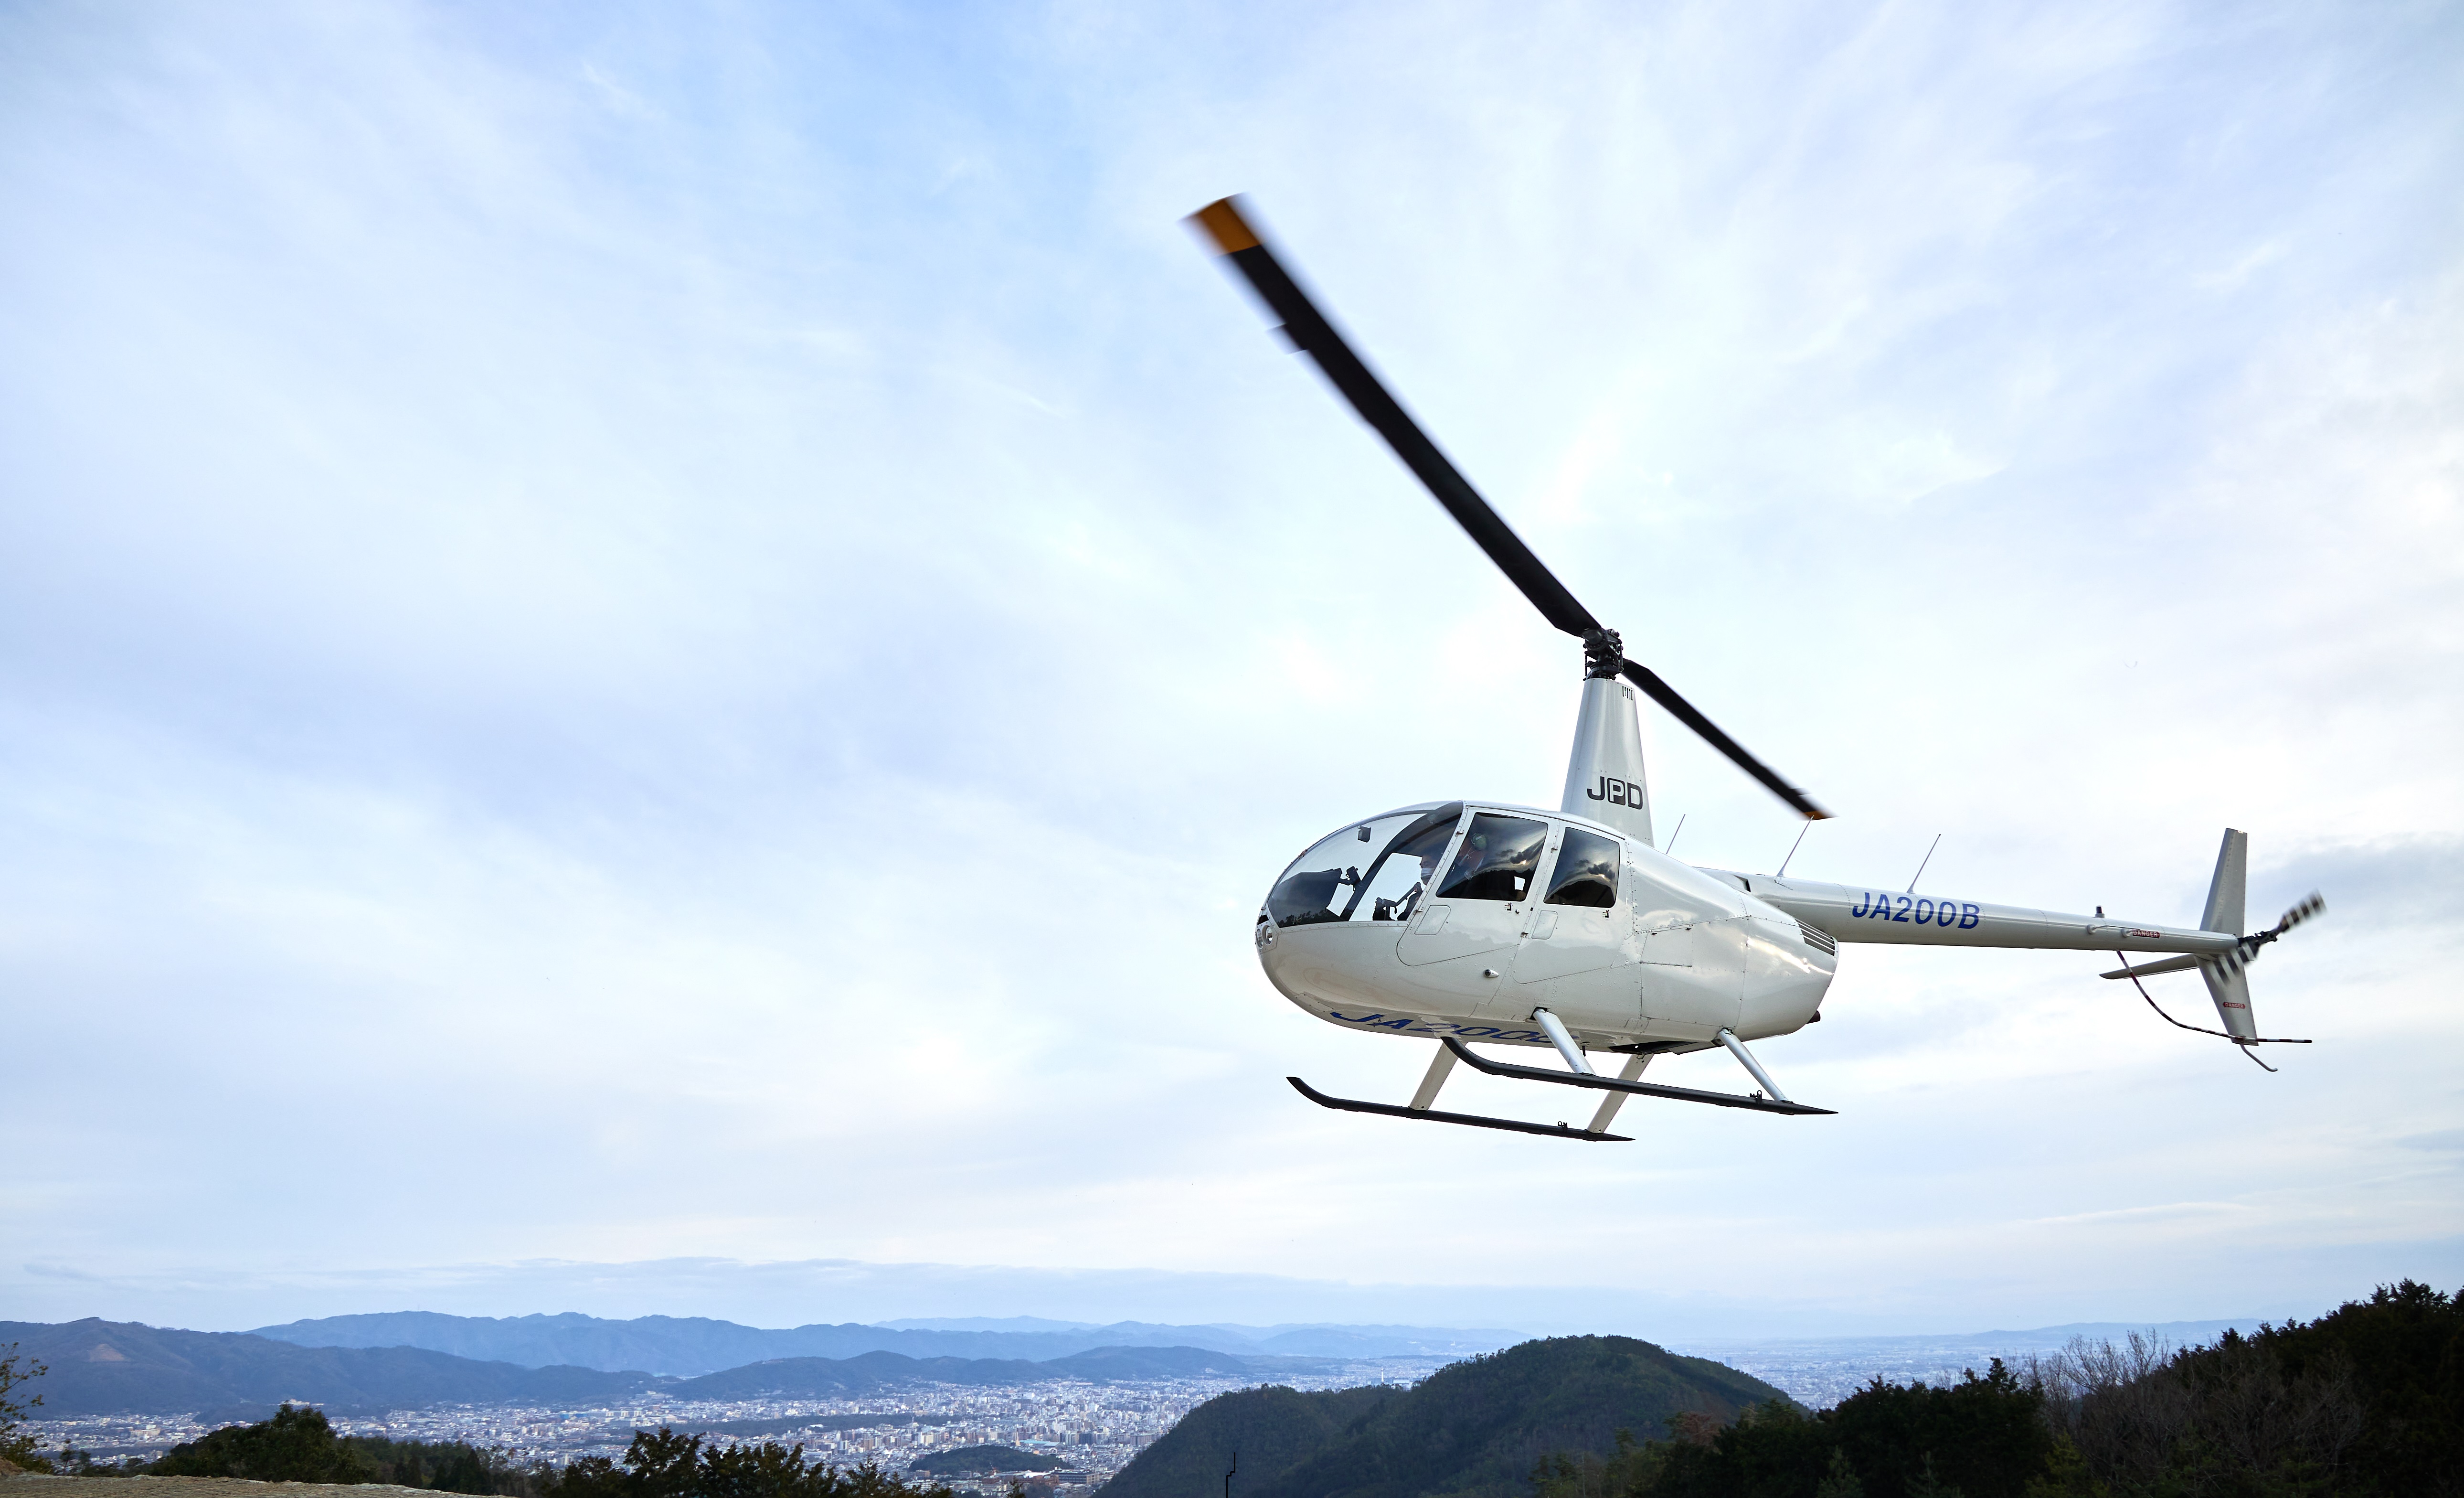 アマン京都 古都の街並みを空から一望 ヘリコプタージャーニー 販売開始 アマン京都のプレスリリース